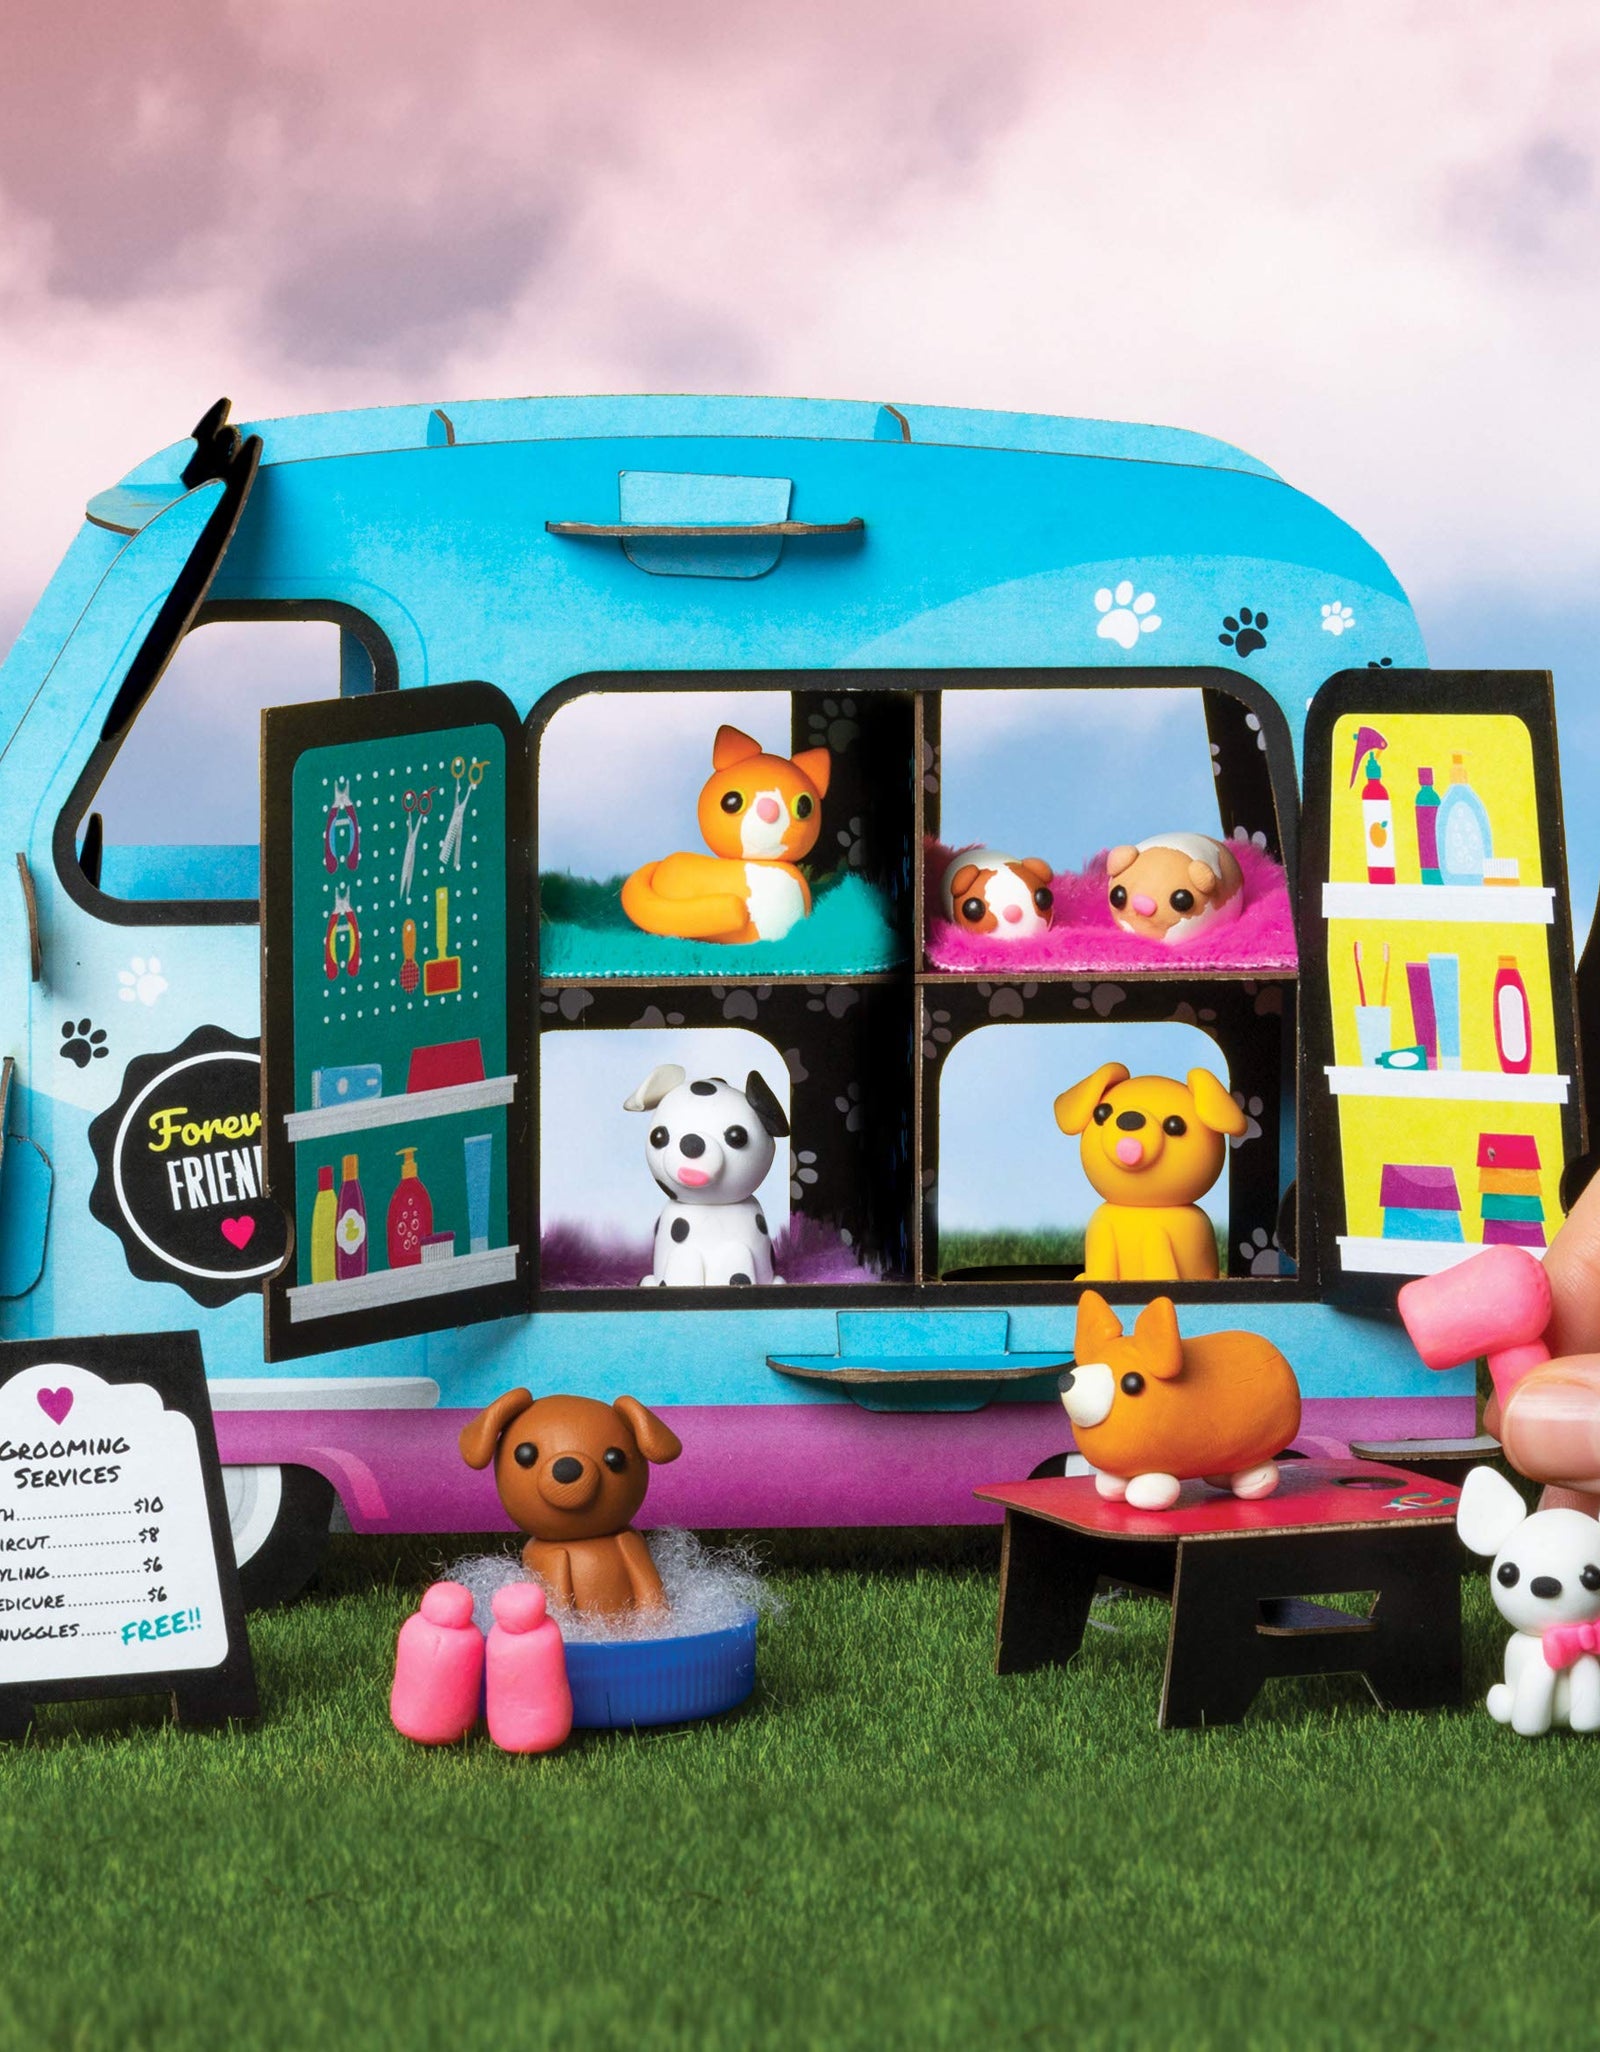 Klutz Mini Clay World Pet Adoption Truck Craft Kit